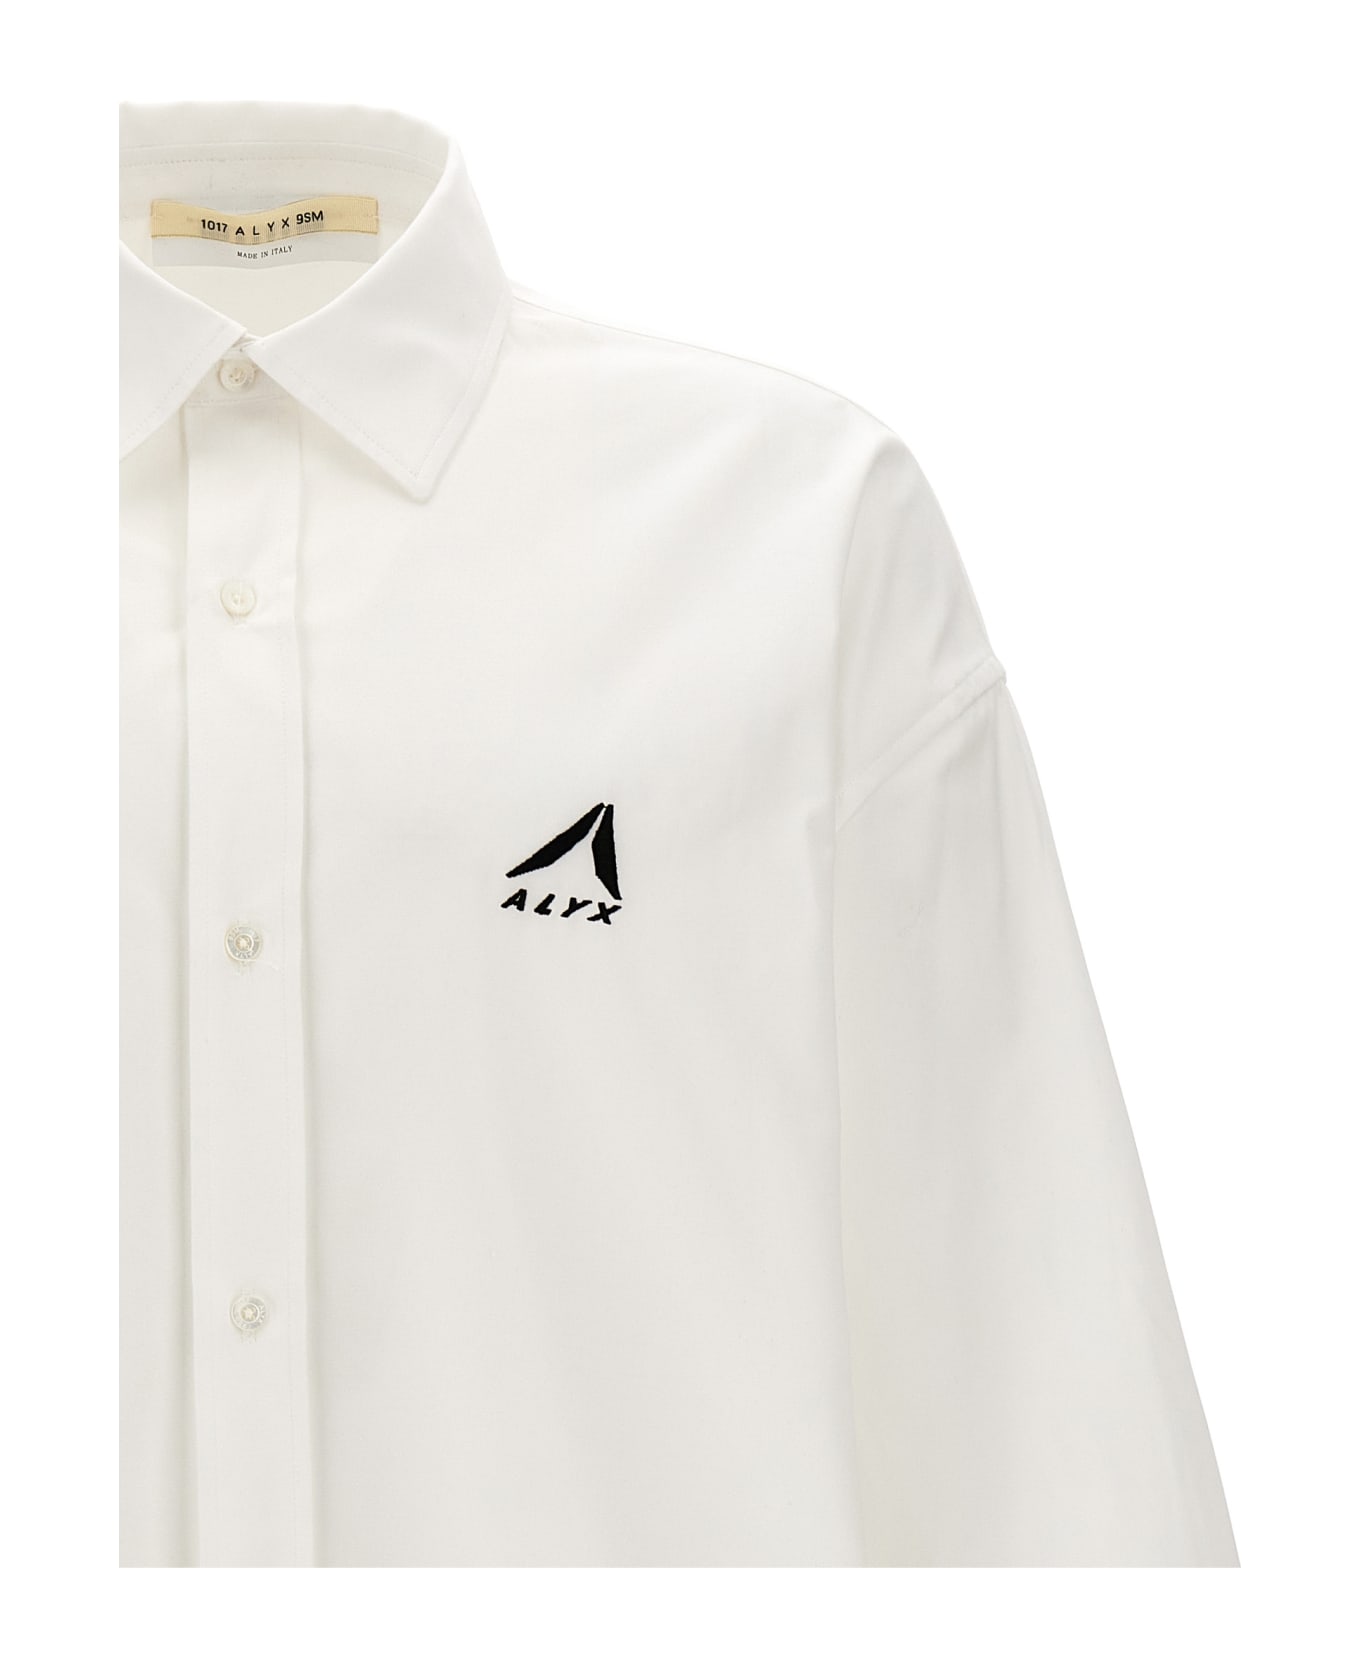 1017 ALYX 9SM 'oversized Logo Poplin' Shirt - White シャツ